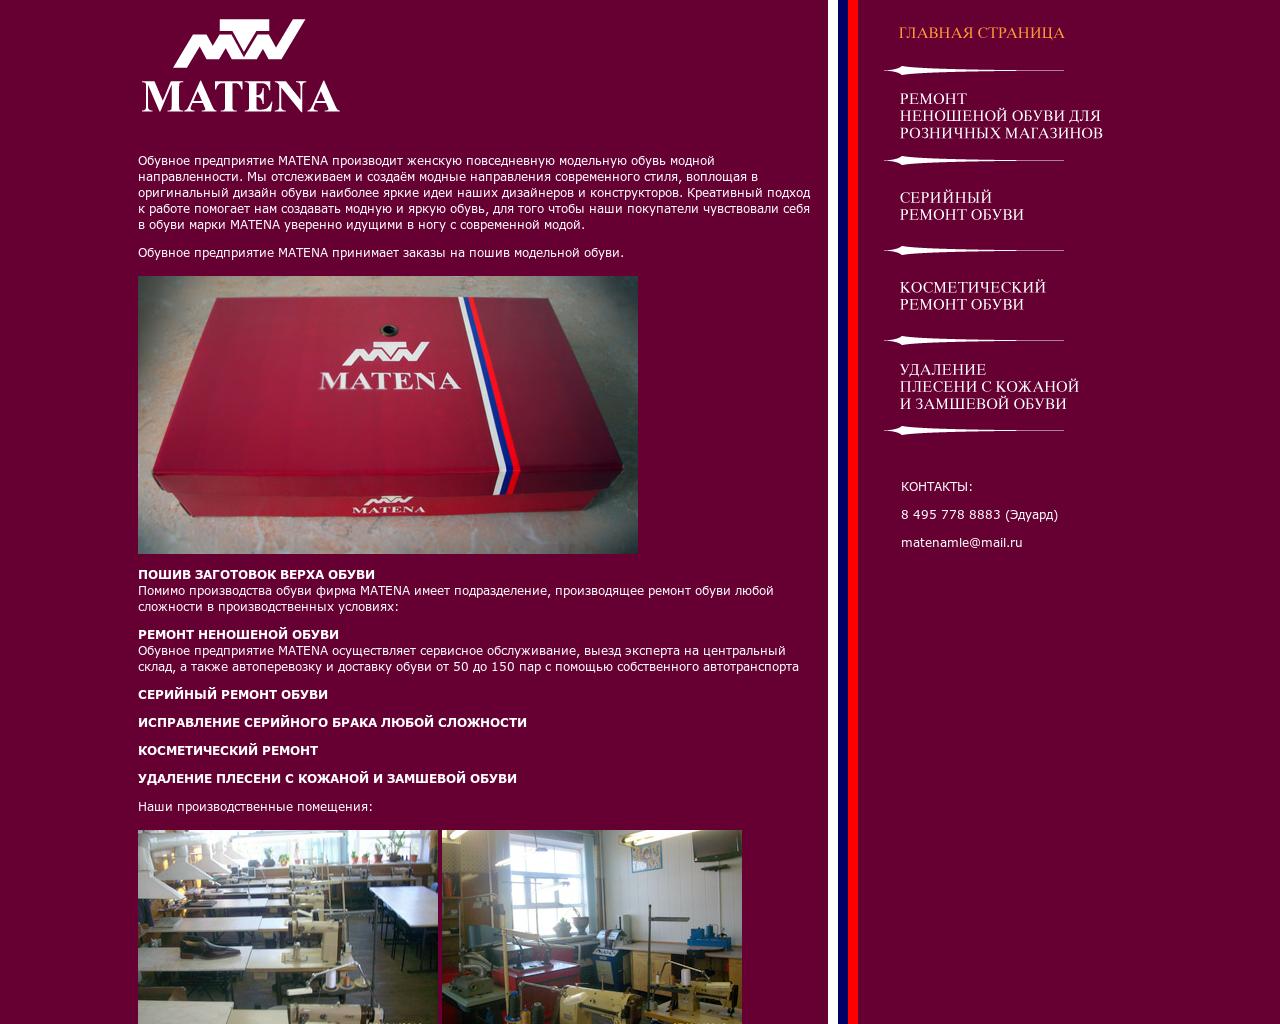 Изображение сайта matena.ru в разрешении 1280x1024